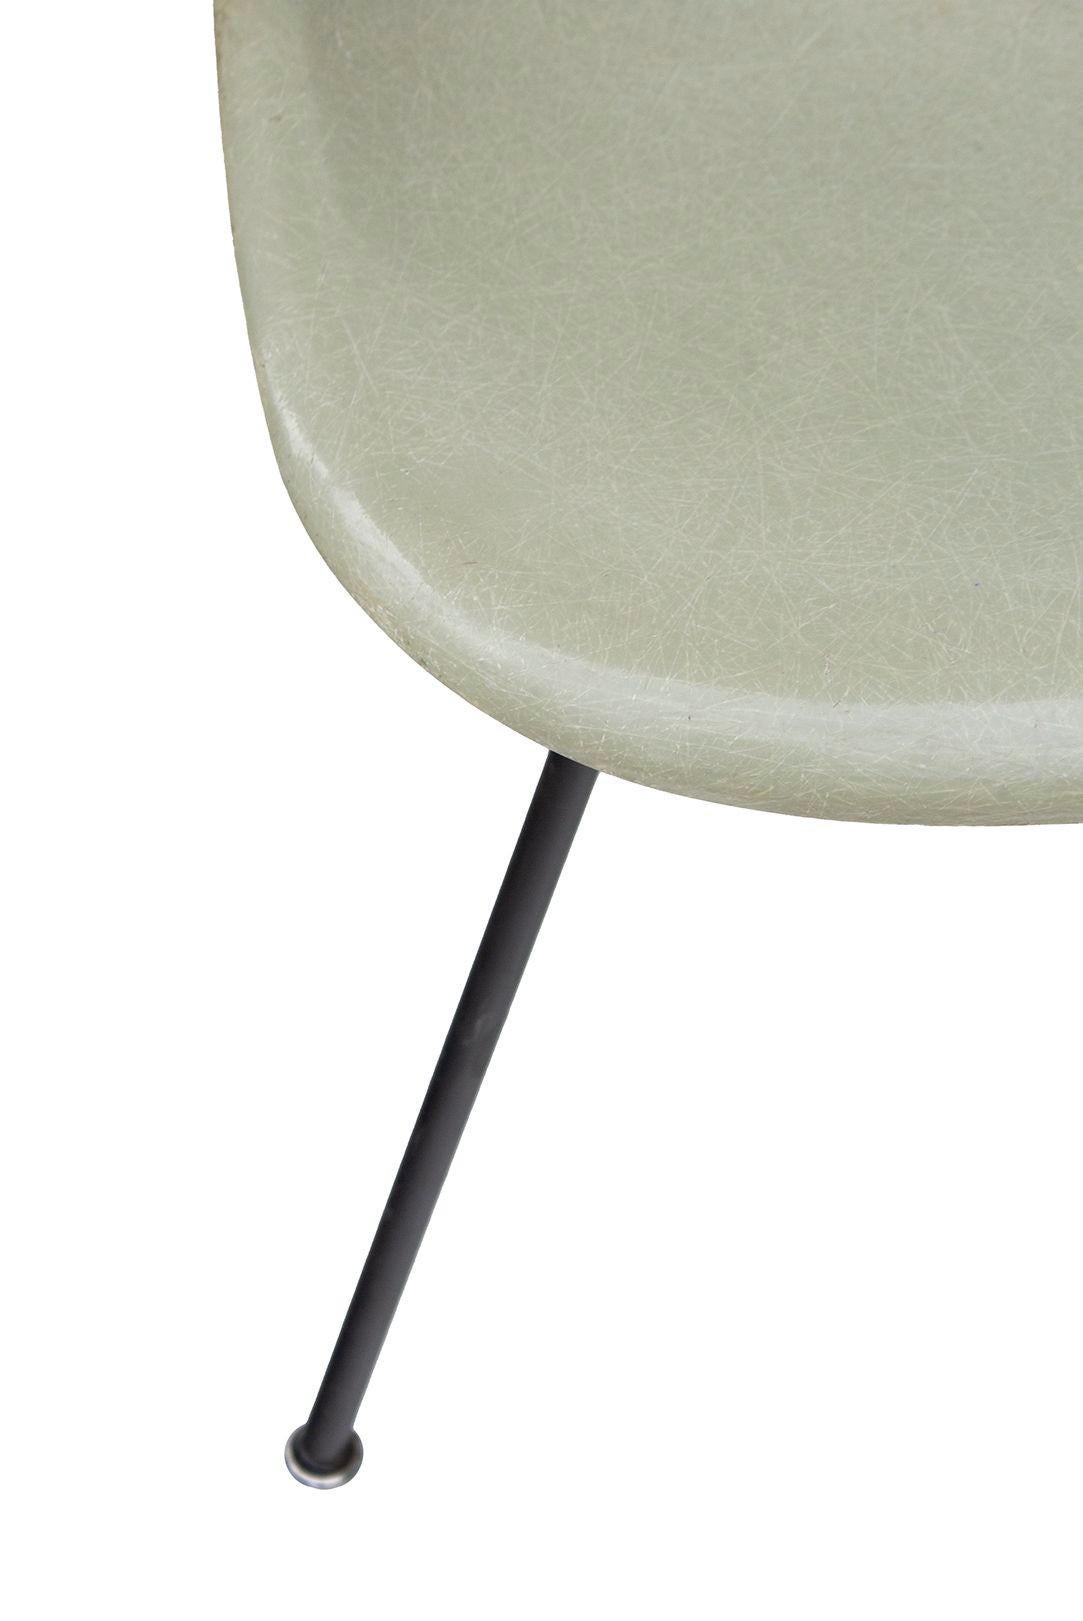 États-Unis, années 1950
Herman Miller Eames Side Shell Chair en Seafoam Light sur base H noire d'origine. La chaise semble avoir subi une réparation de la fibre de verre sur le côté (voir photo). Couleurs magnifiques et style original du milieu du